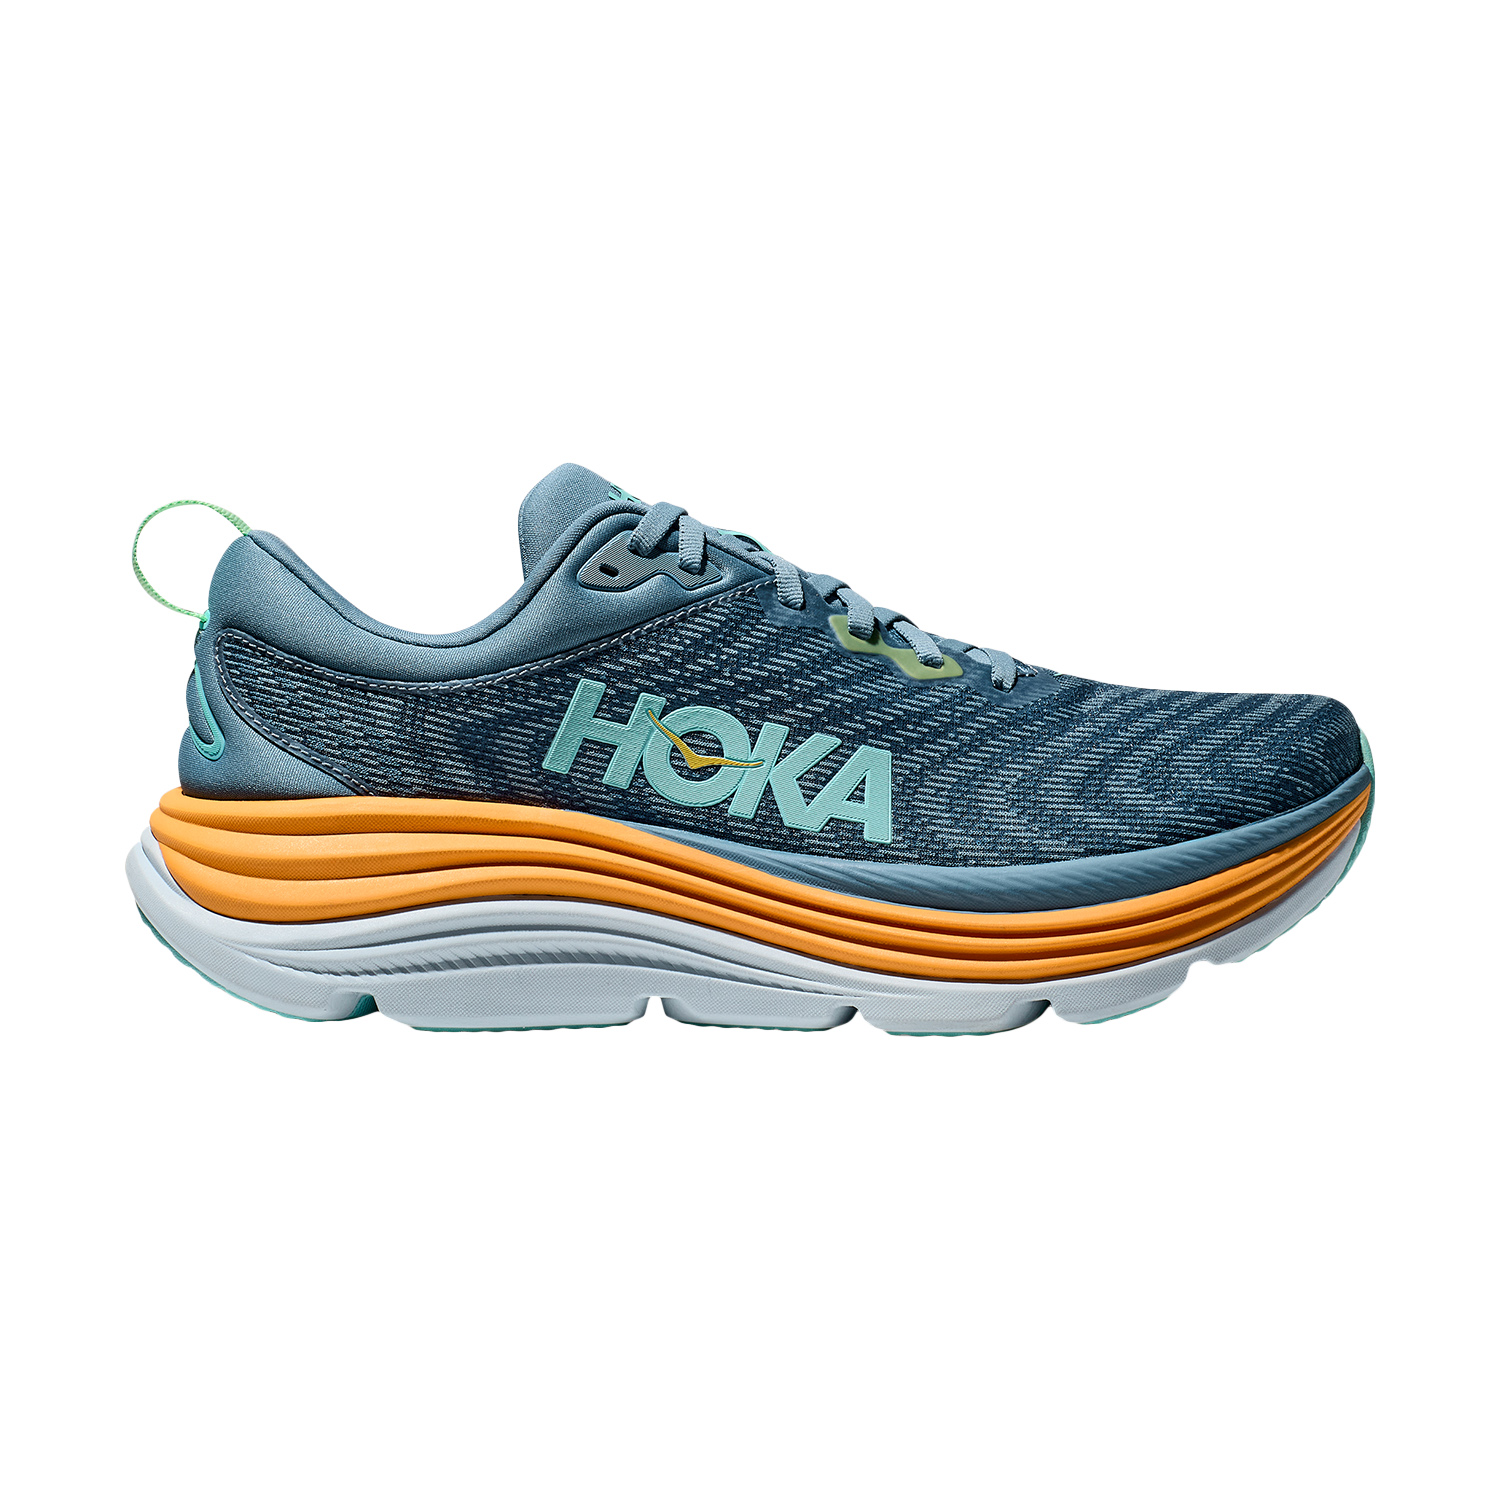 The Hoka Gaviota Sneakers Review